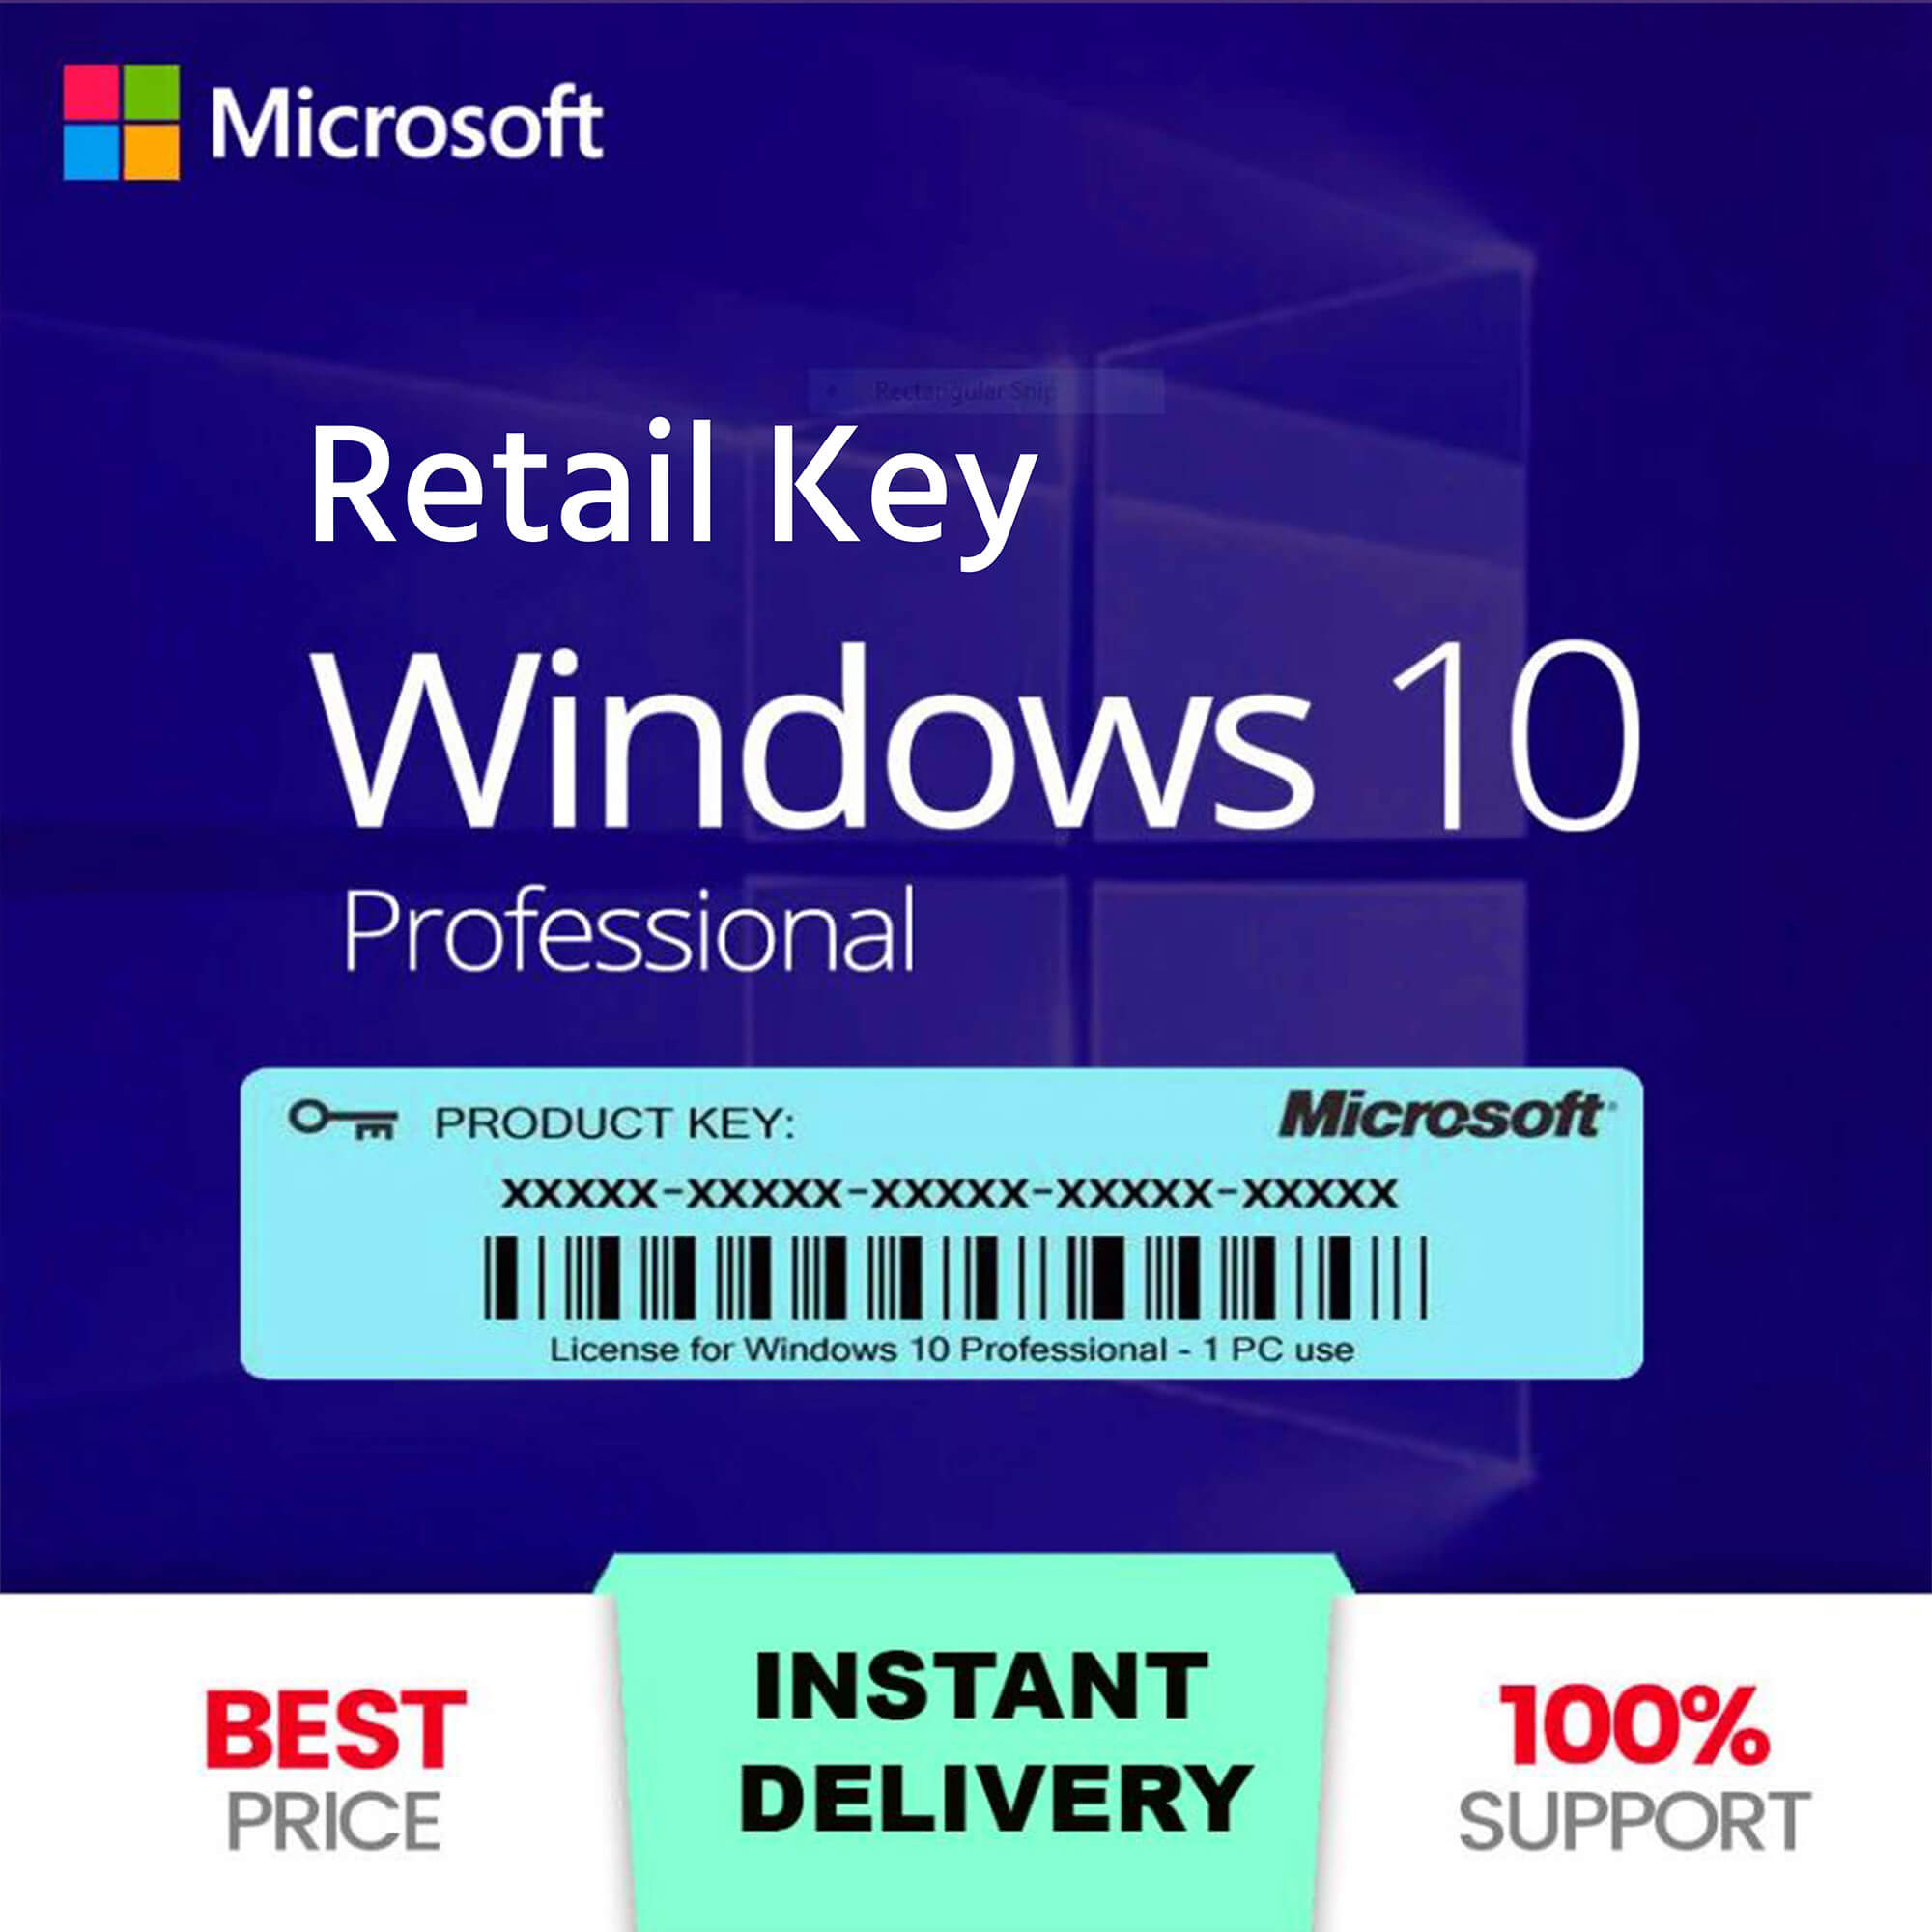 windows 10 pro retail key price